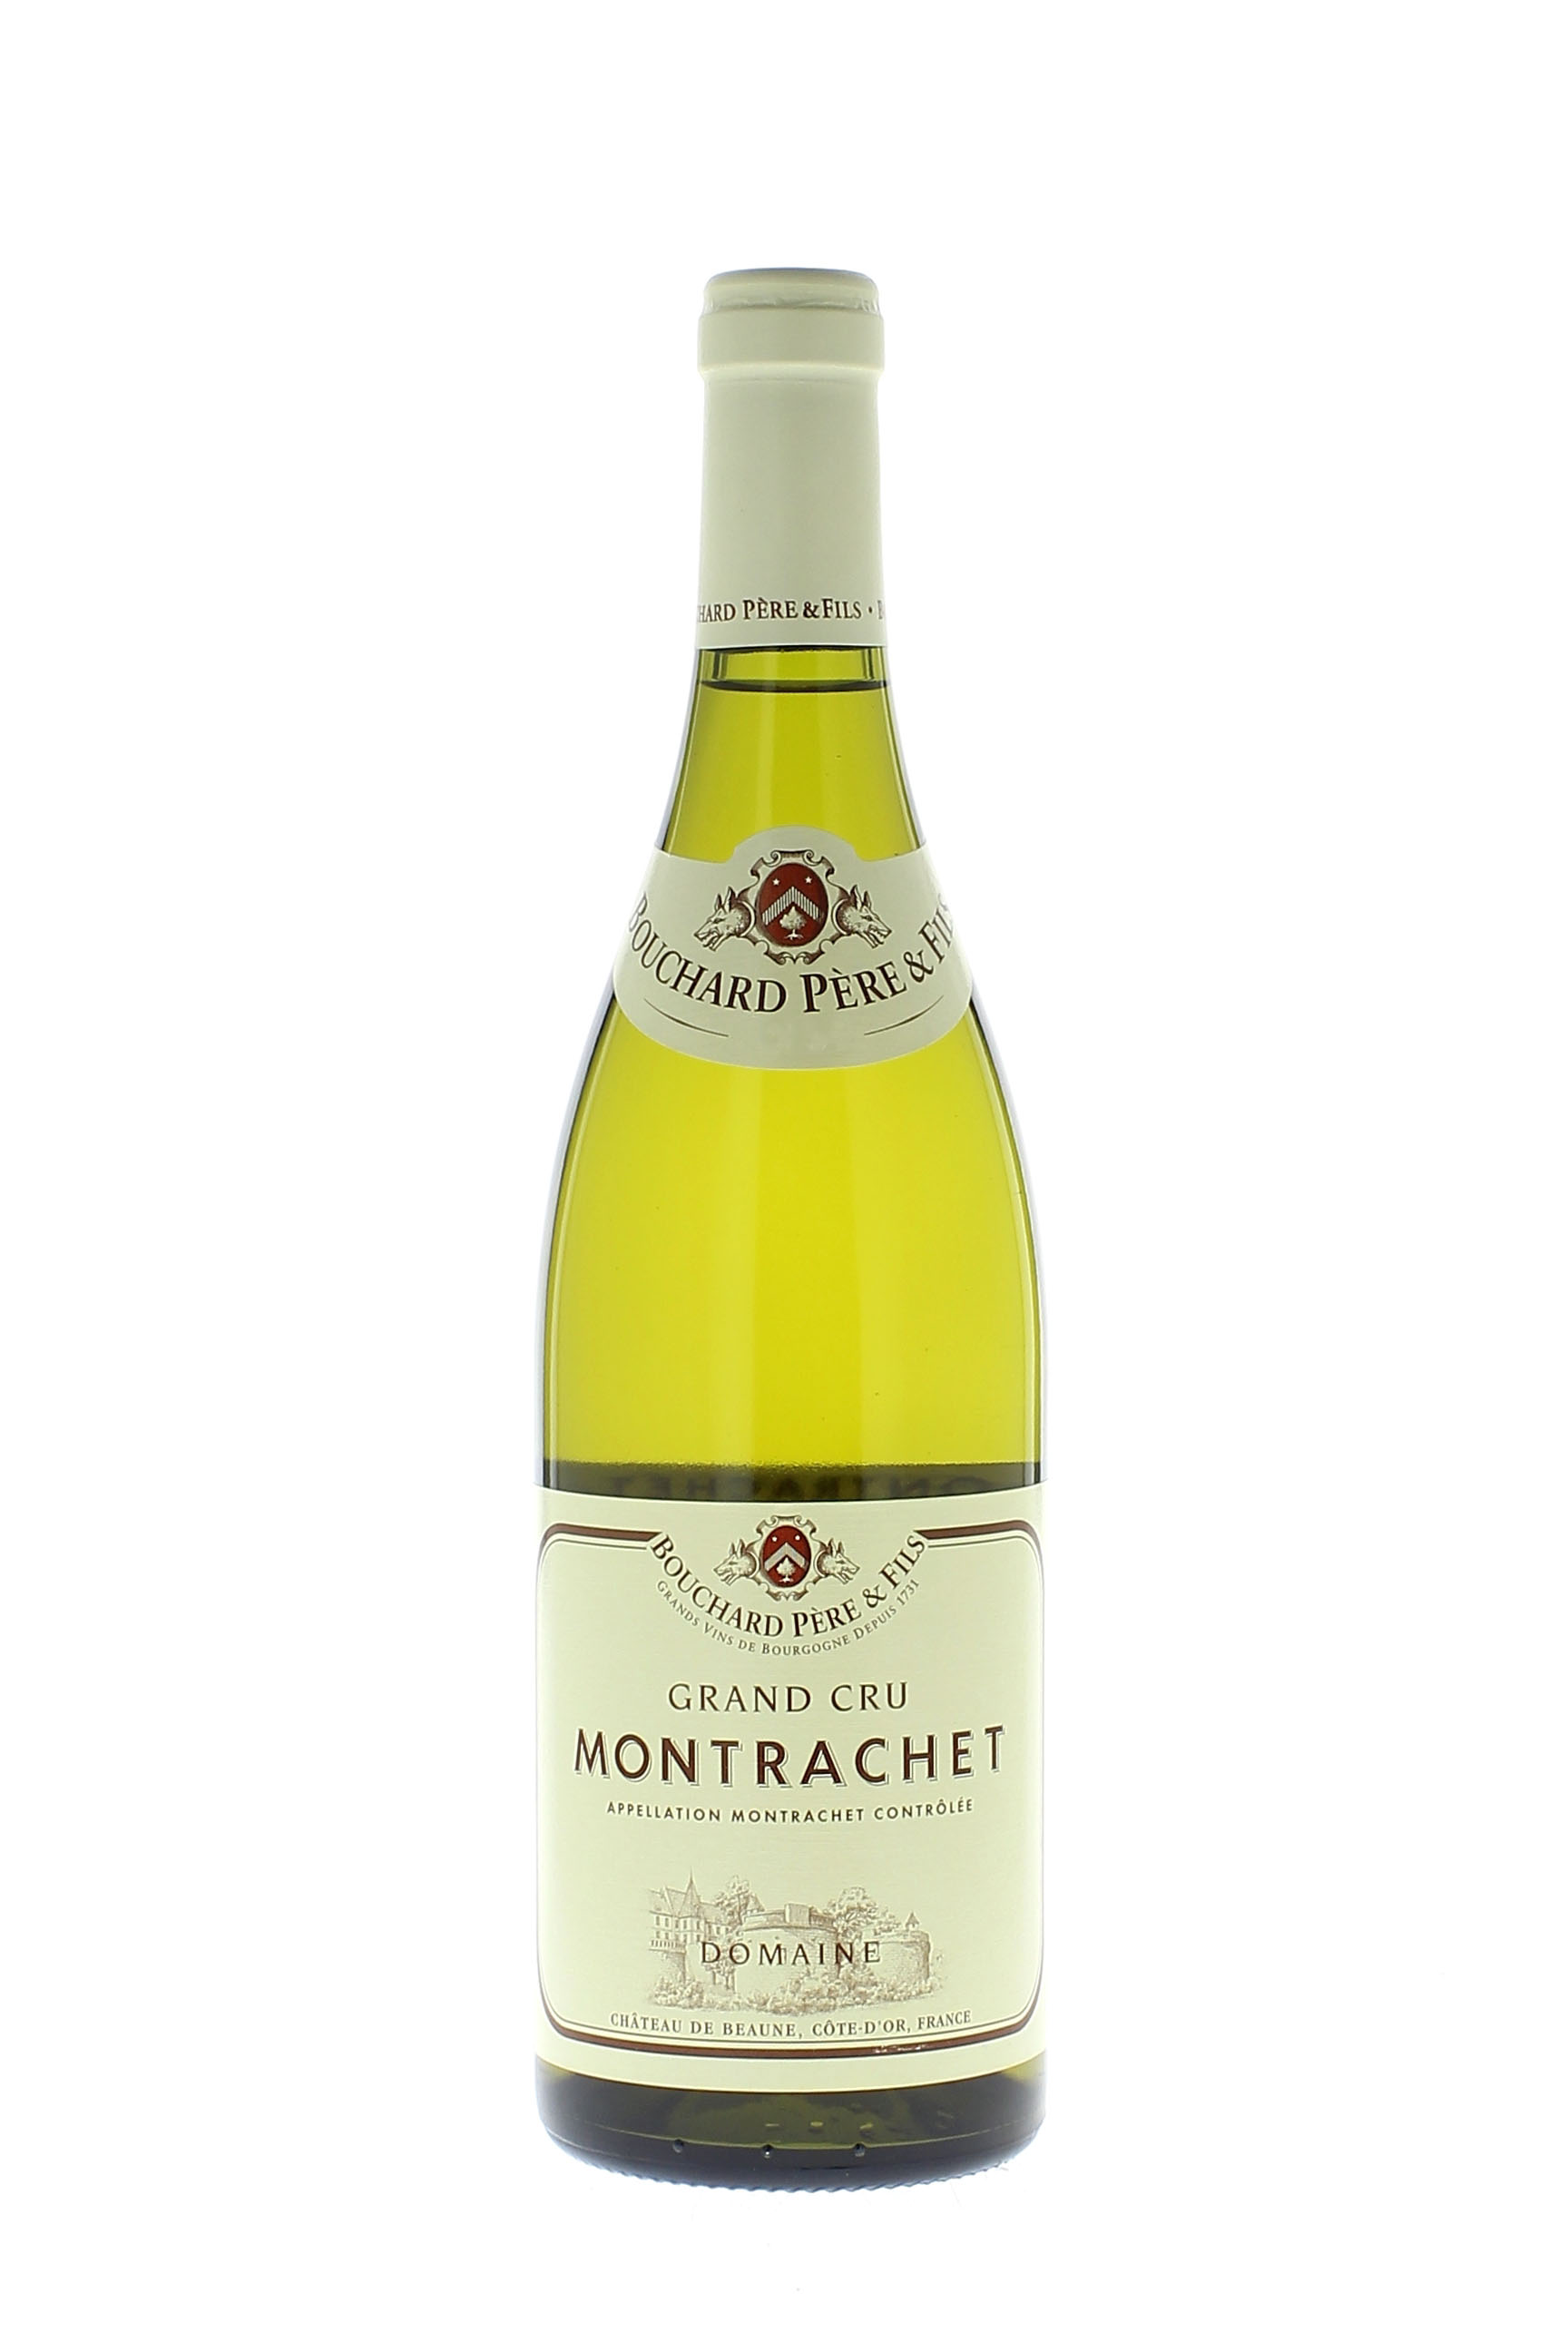 Montrachet grand cru 2016  BOUCHARD Pre et fils, Bourgogne blanc